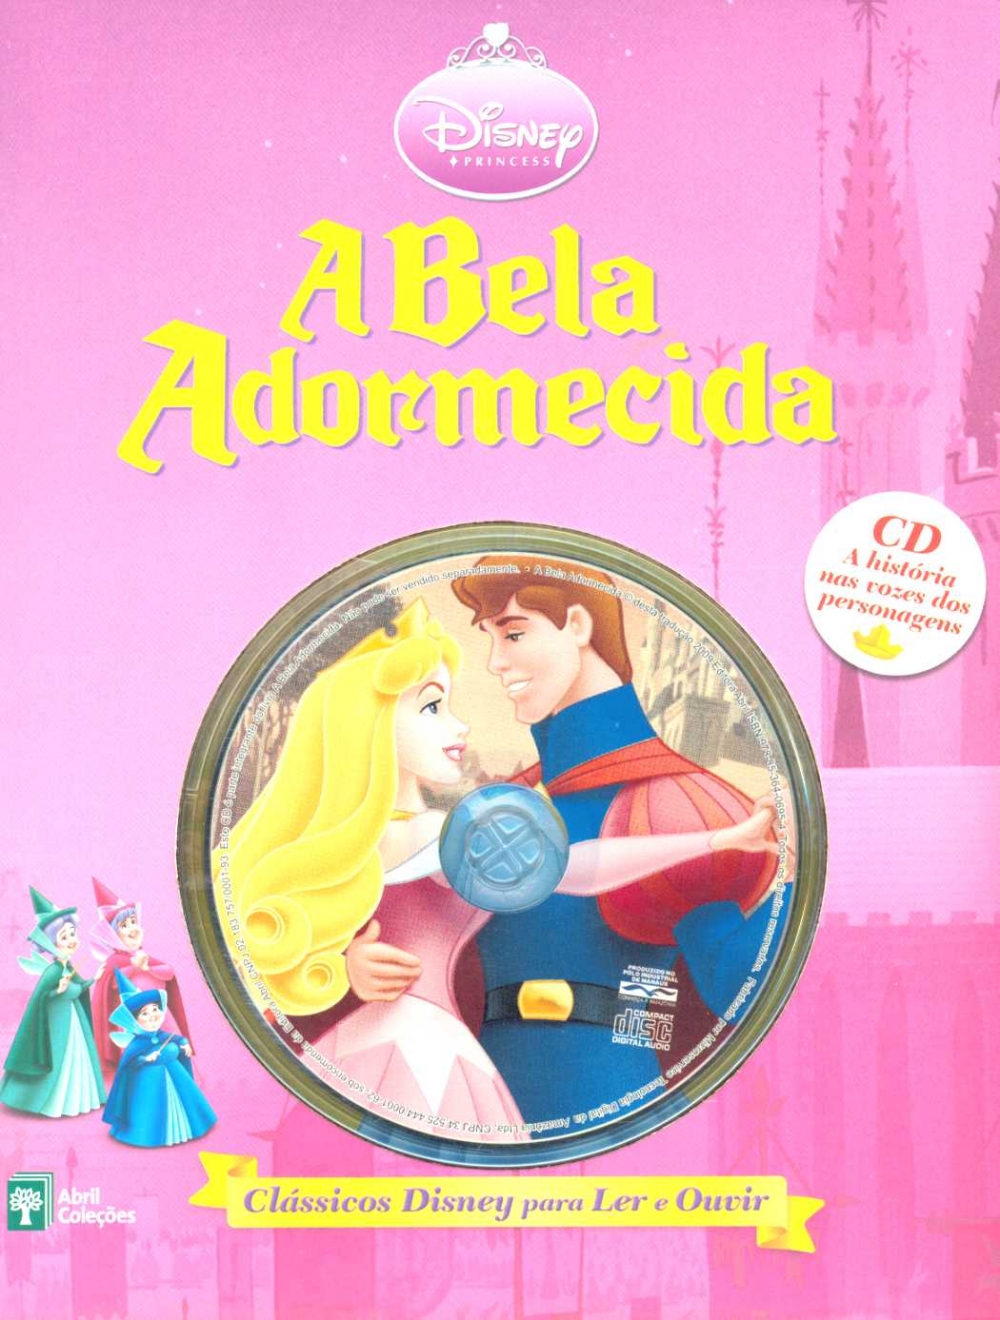 Princesa Aurora, a Bela Adormecida com Malévola, Principe Philip e